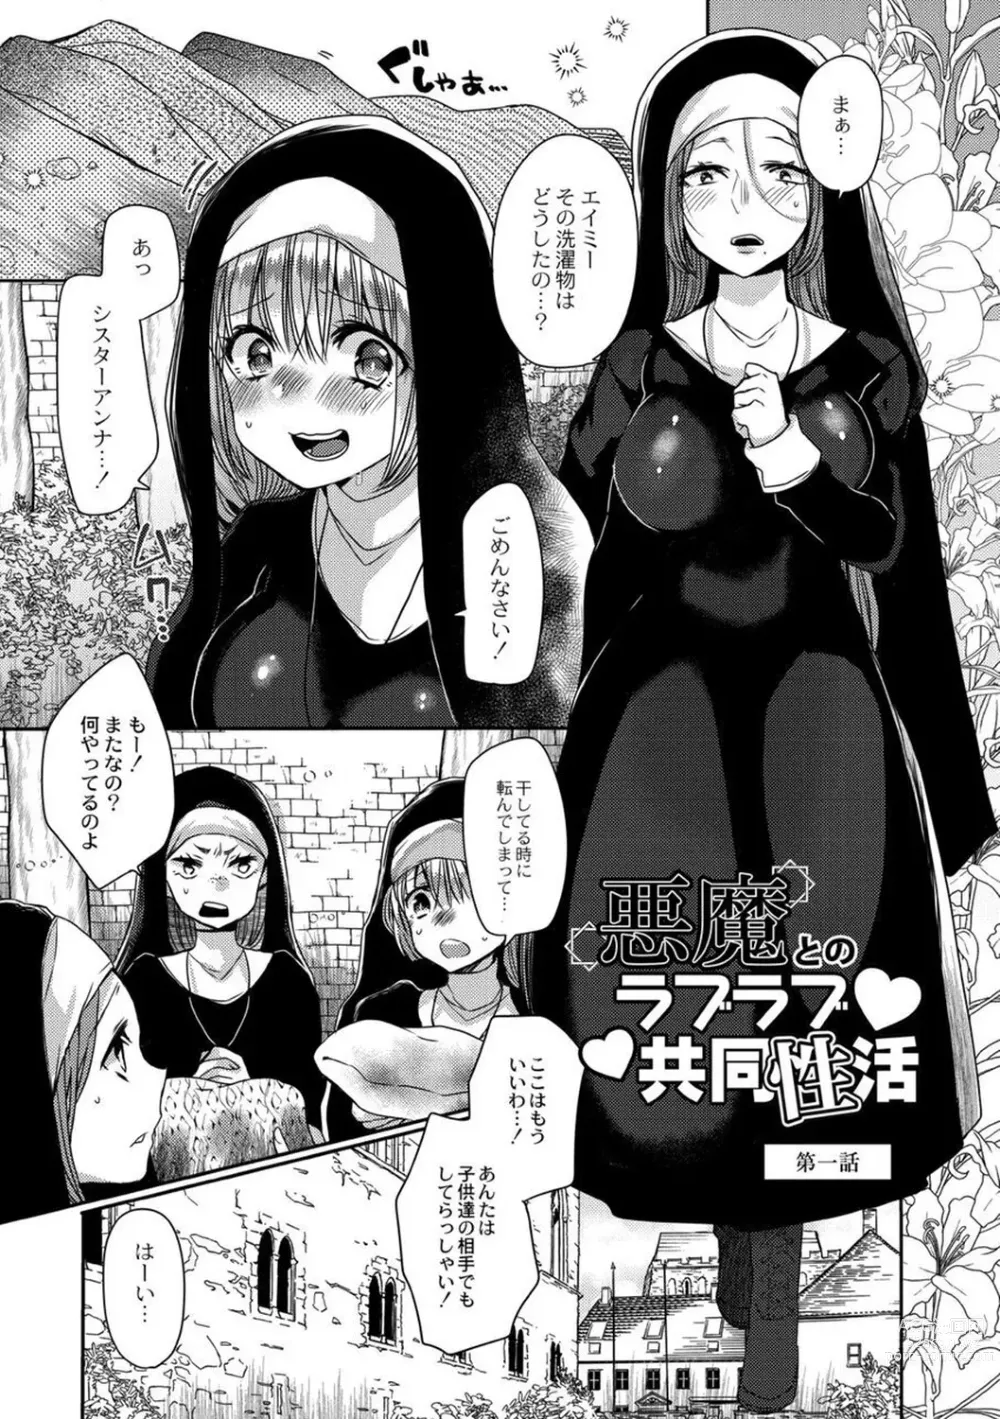 Page 5 of manga Junai Holic